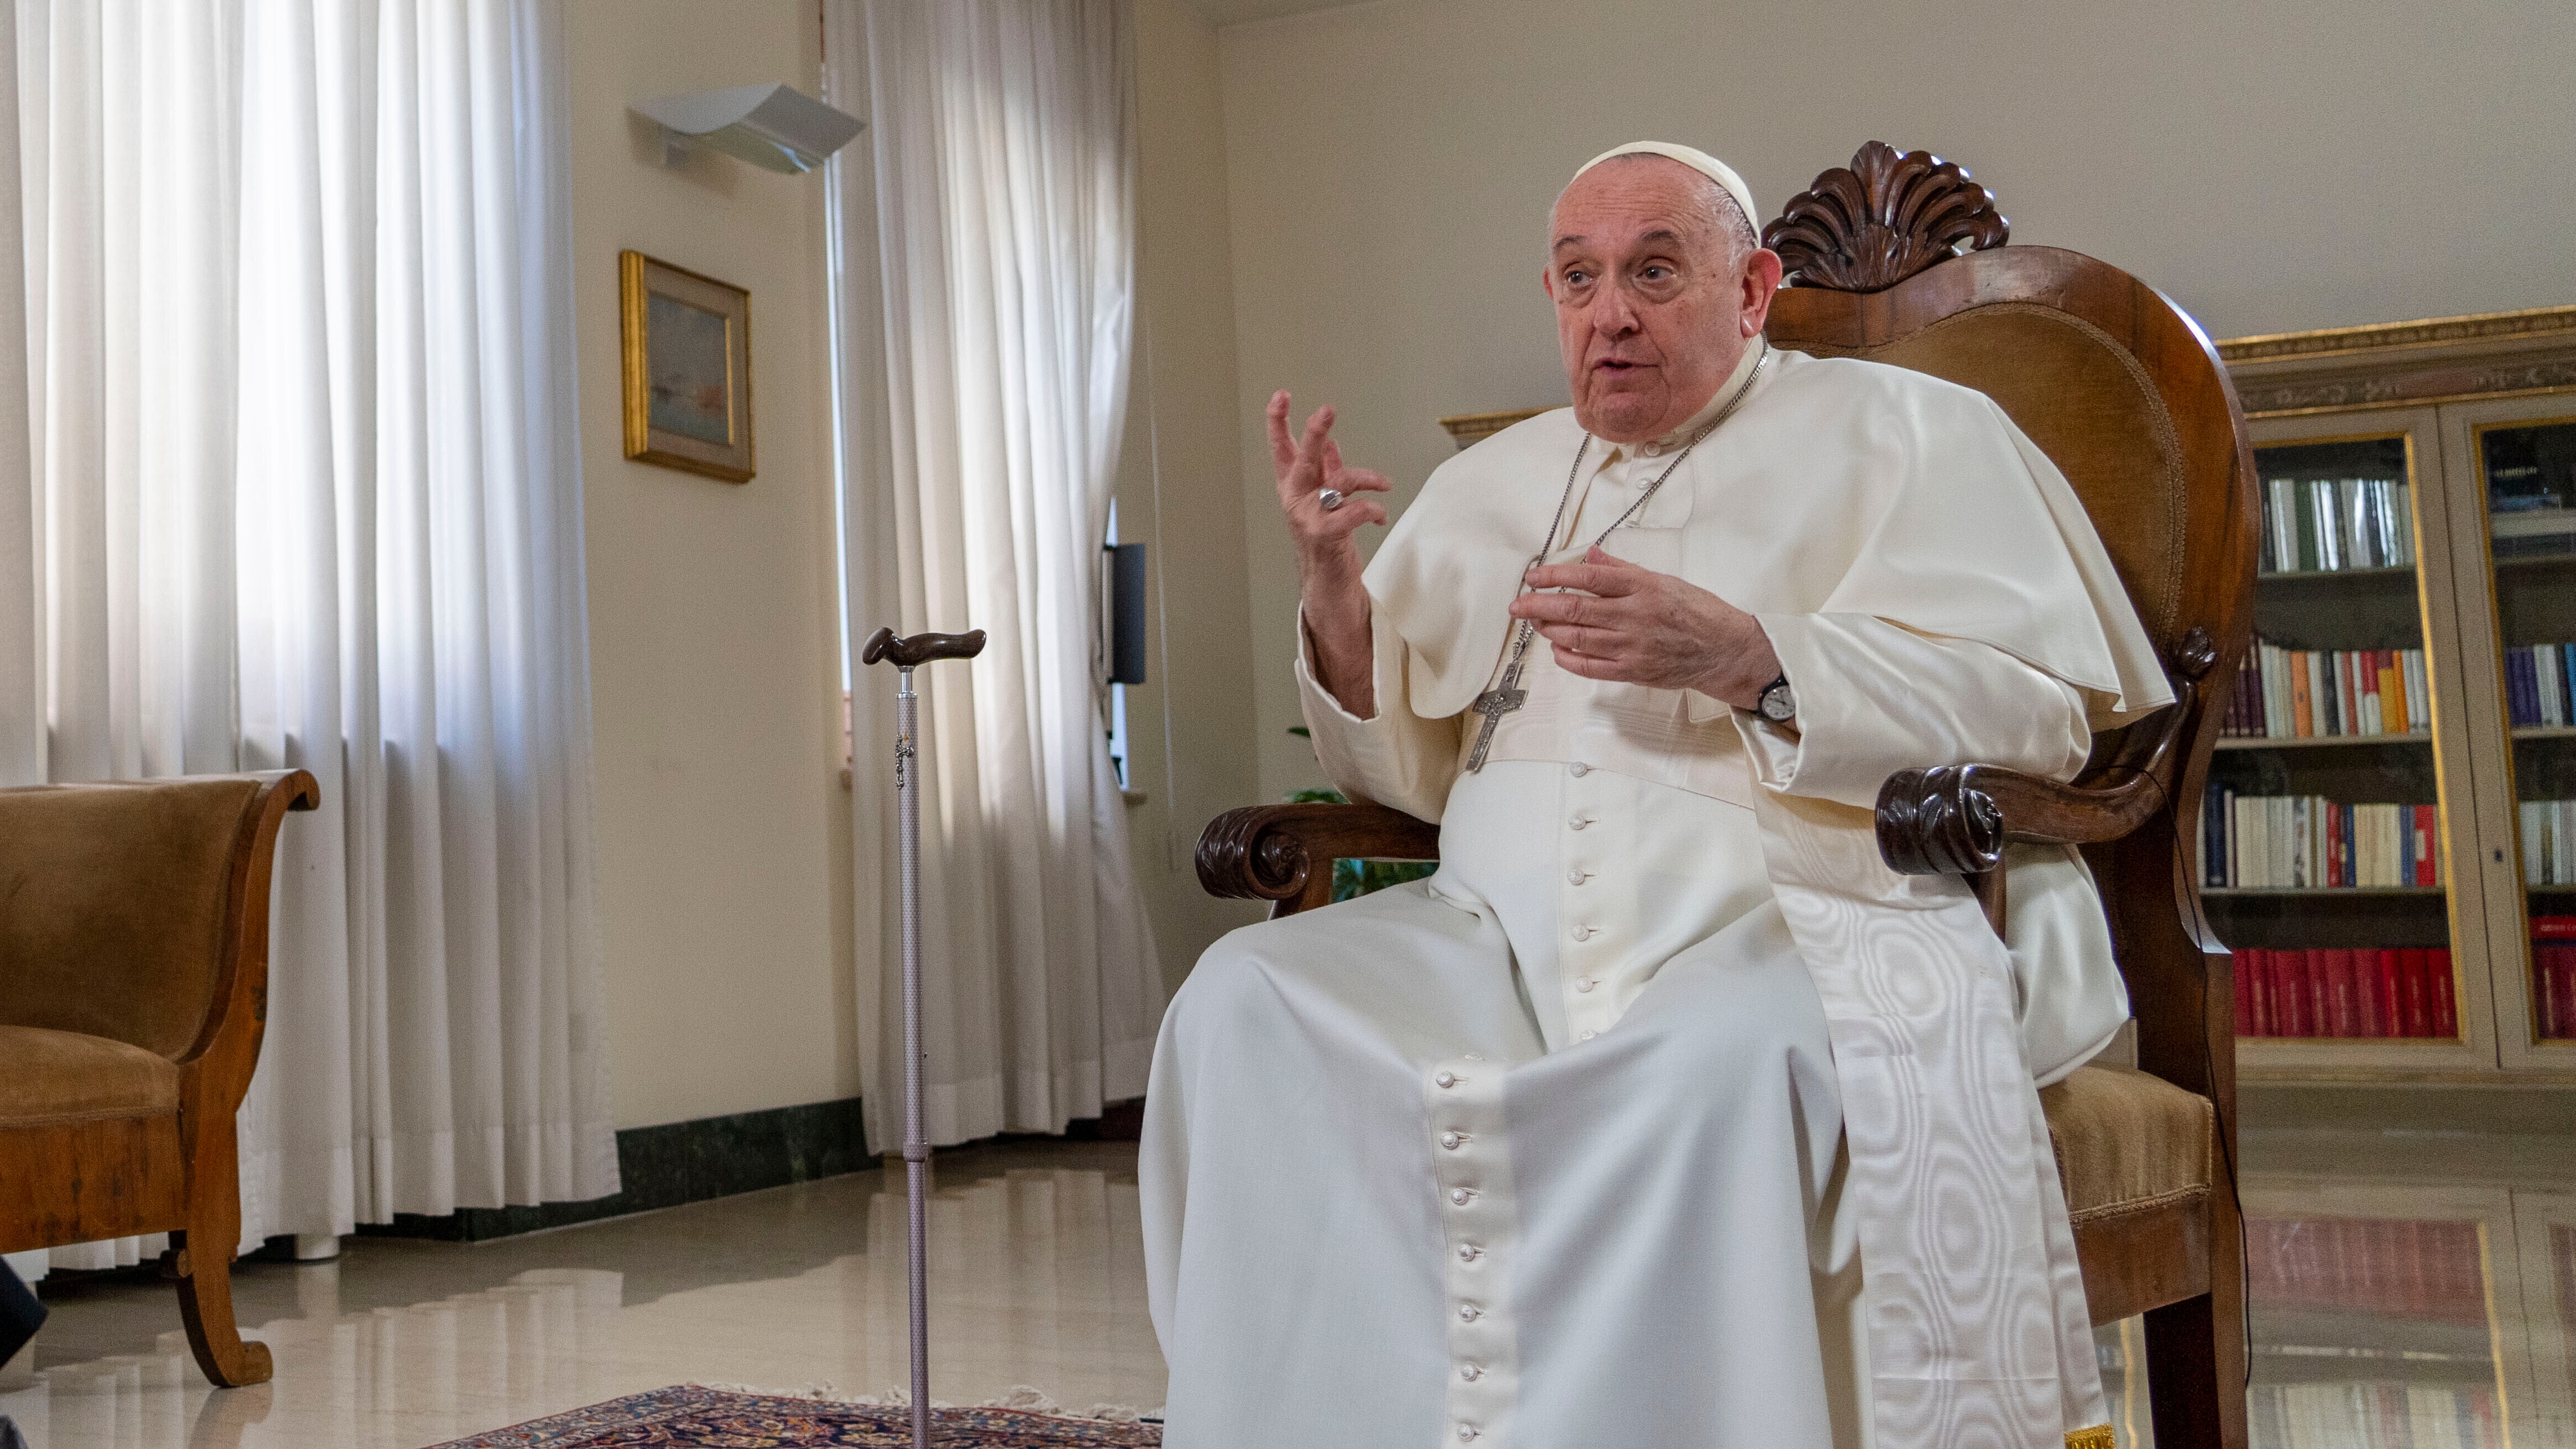 El papa Francisco aclaró sus dichos sobre la homosexualidad, en una carta a un sacerdote cercano a la comunidad LGBT